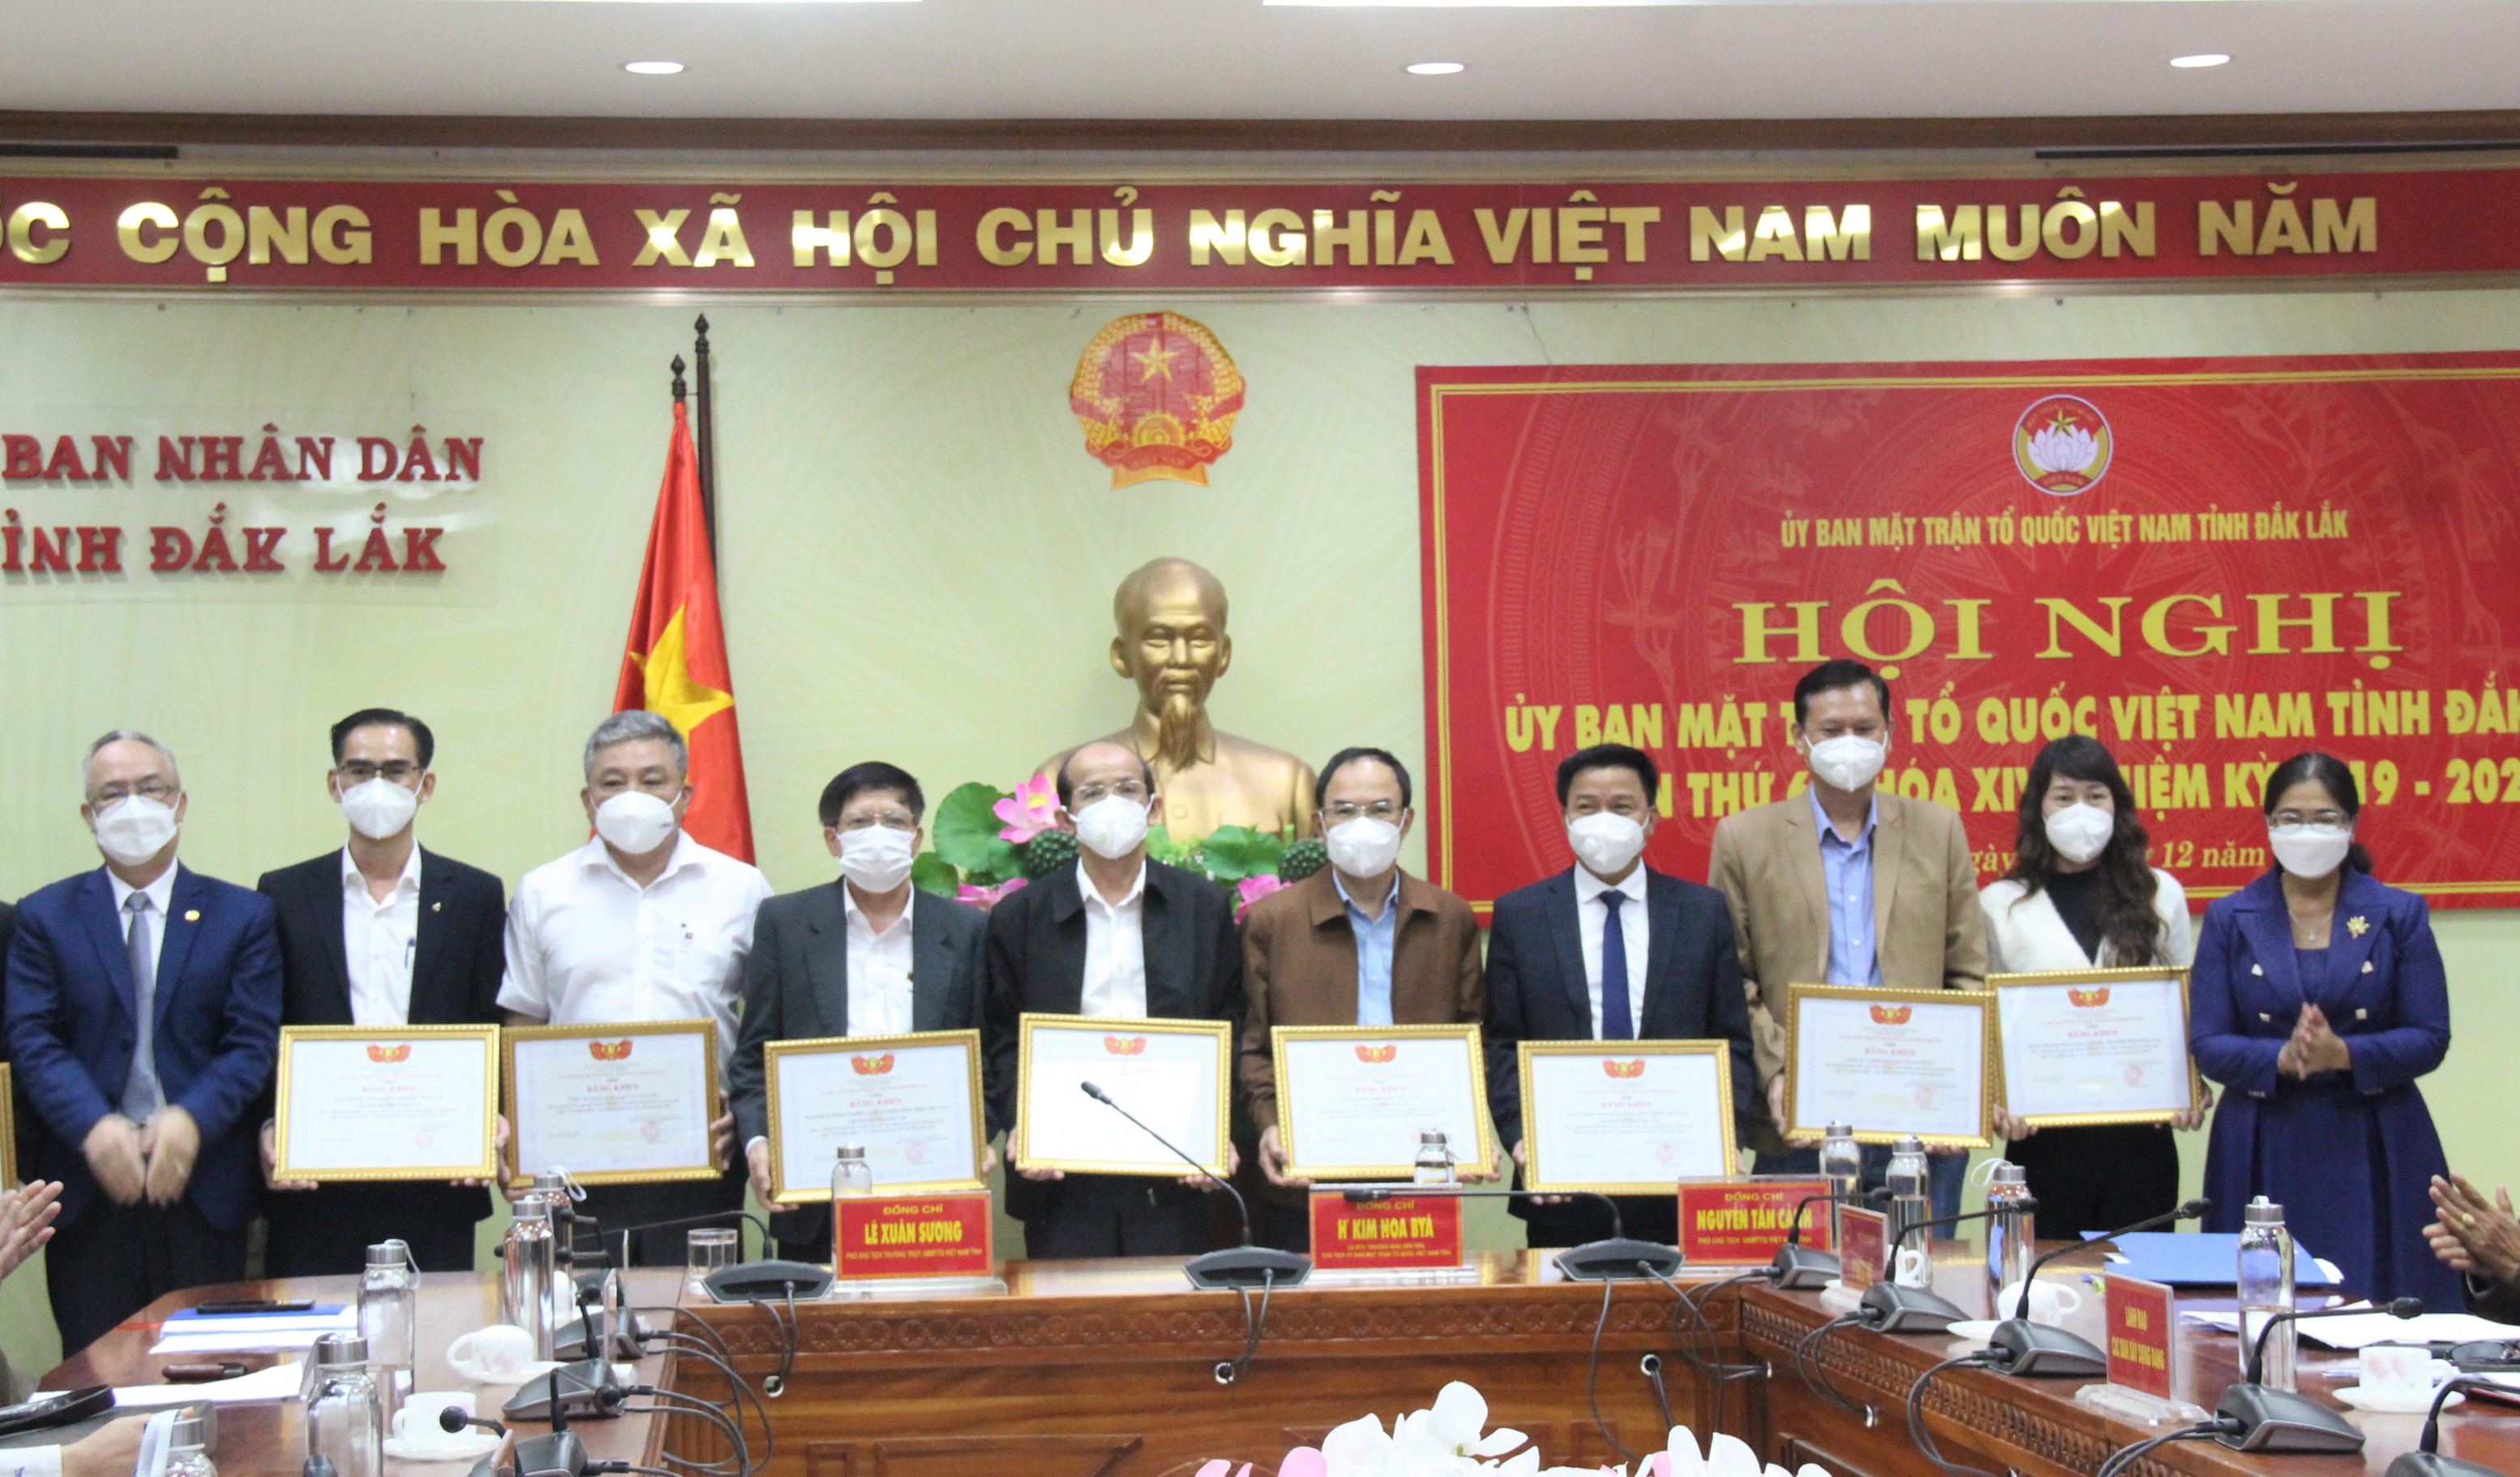 Hội nghị Ủy ban Mặt trận Tổ quốc Việt Nam tỉnh Đắk Lắk lần thứ 6, nhiệm kỳ 2019-2024